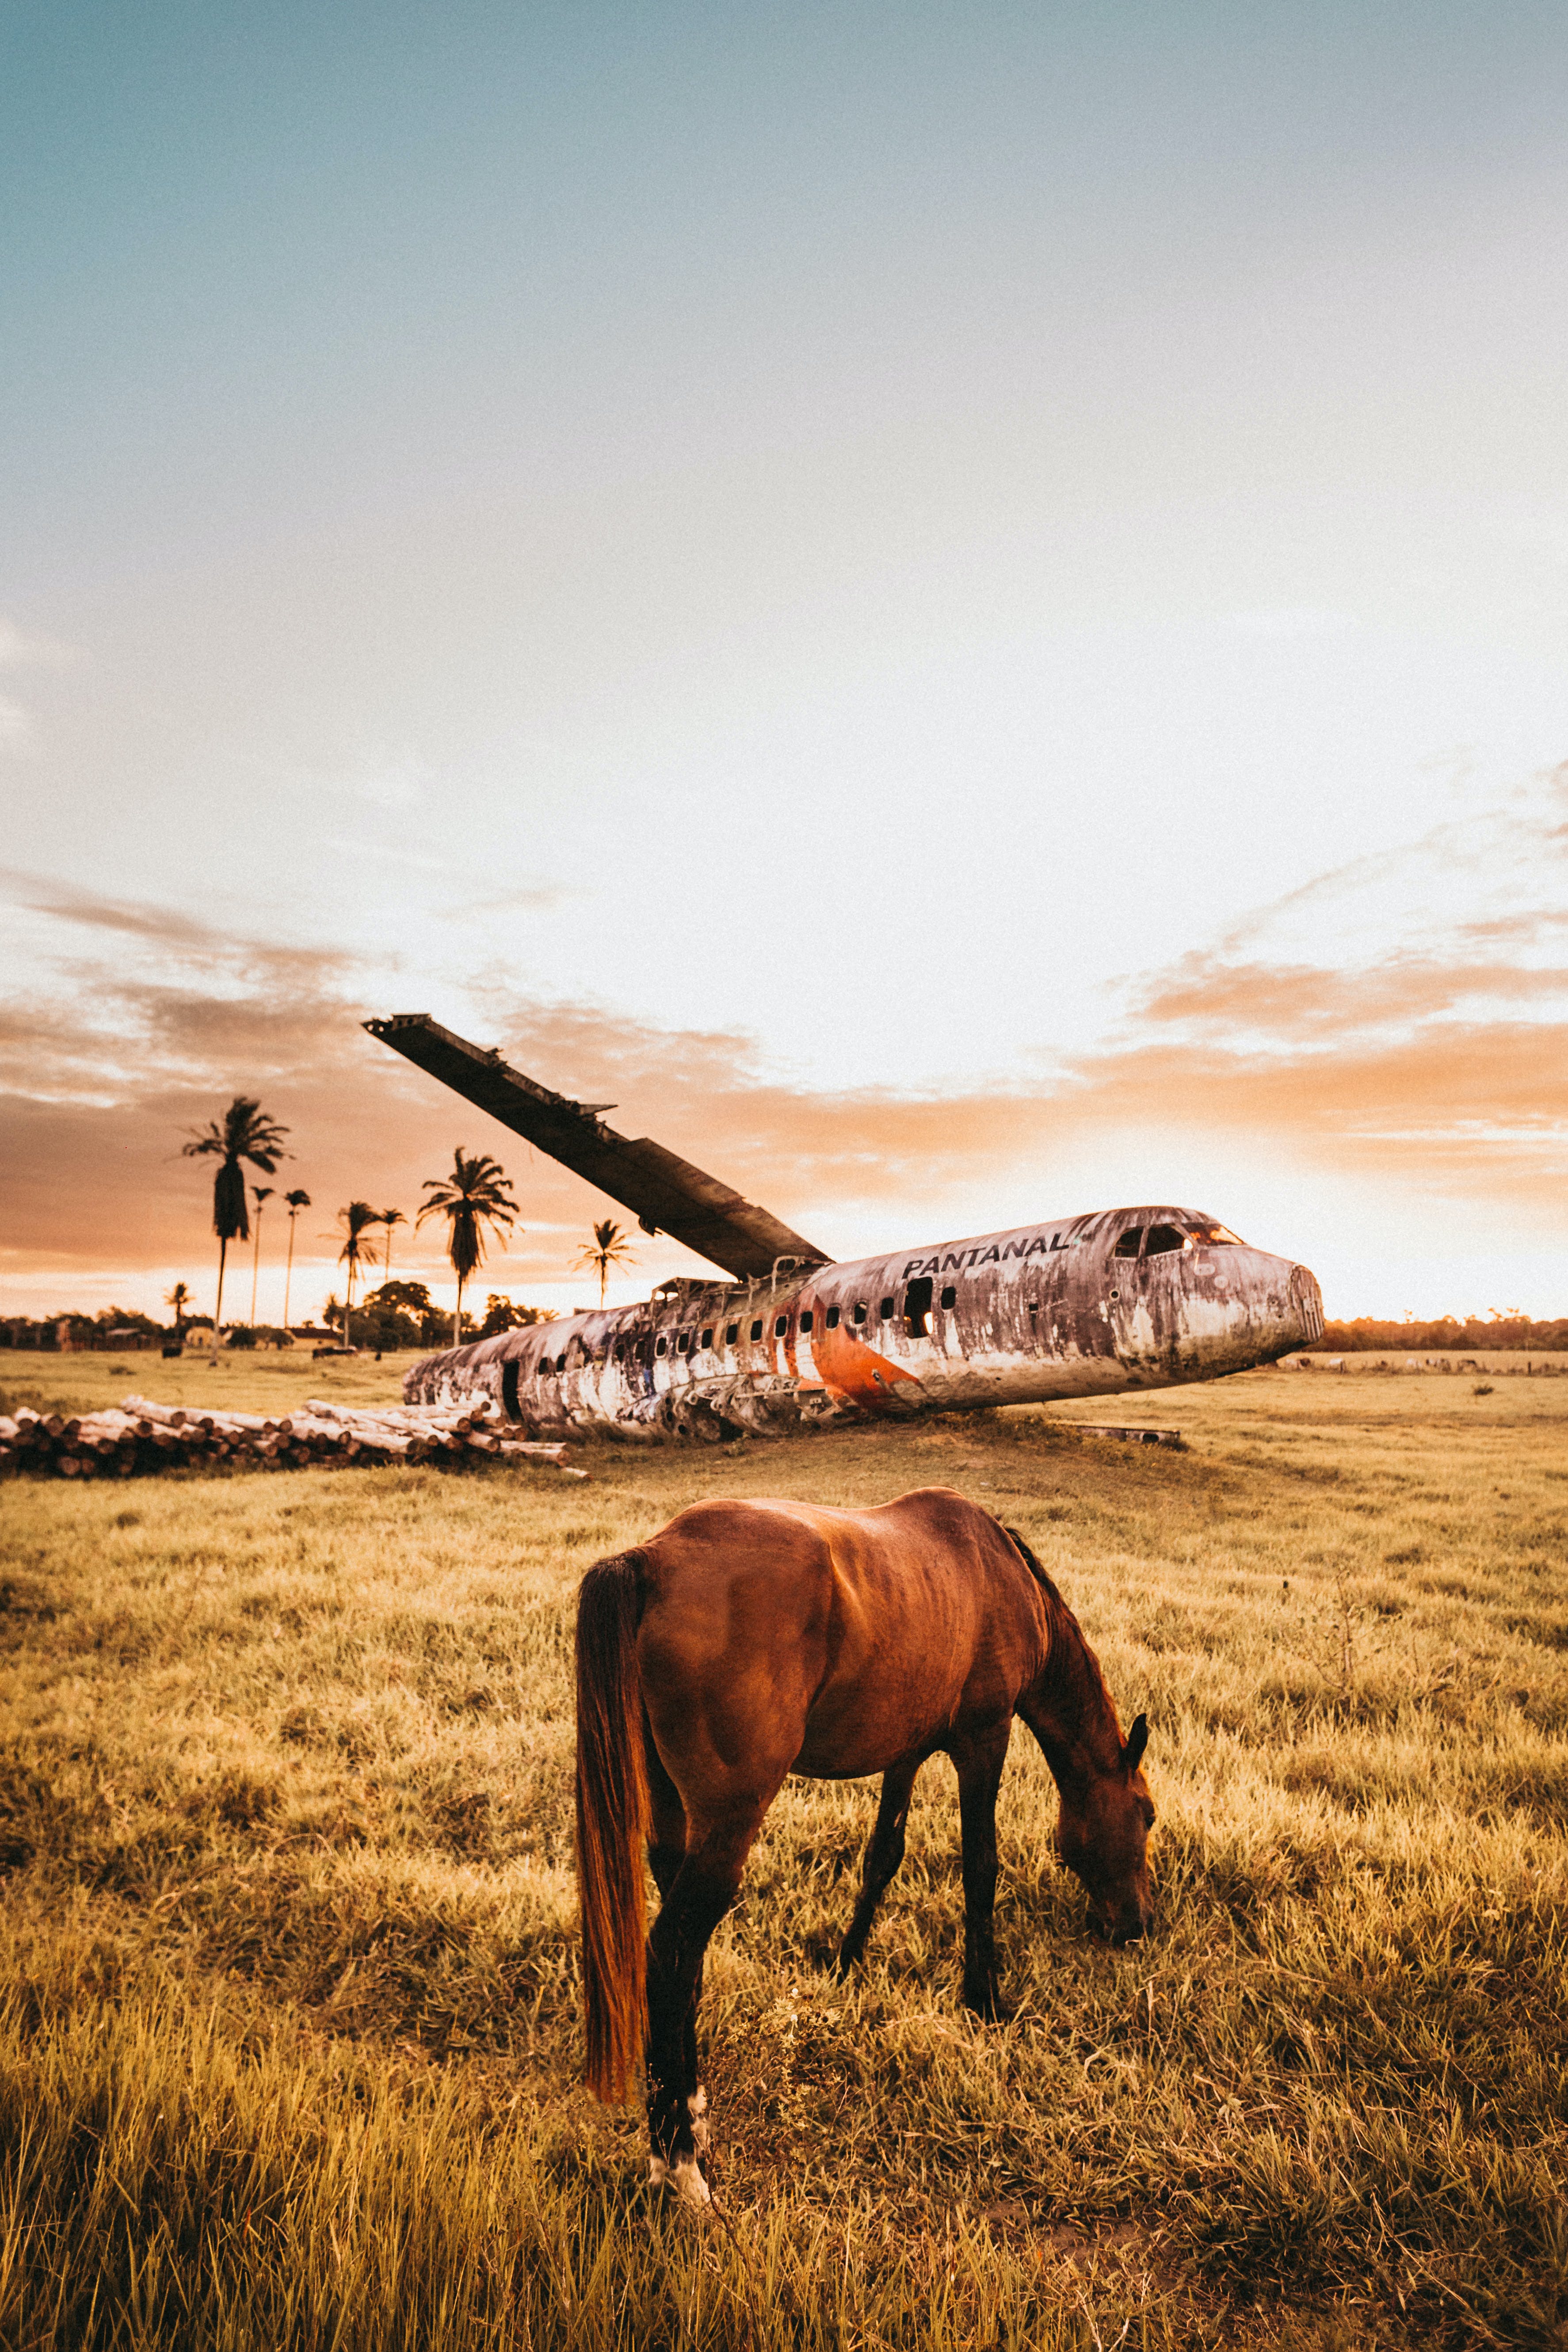 Disaster Recovery - Cavalo pastando do lado de um avião decadente - Foto obitida em pexels.com. Foto de Jonathan Borba. Uso público.